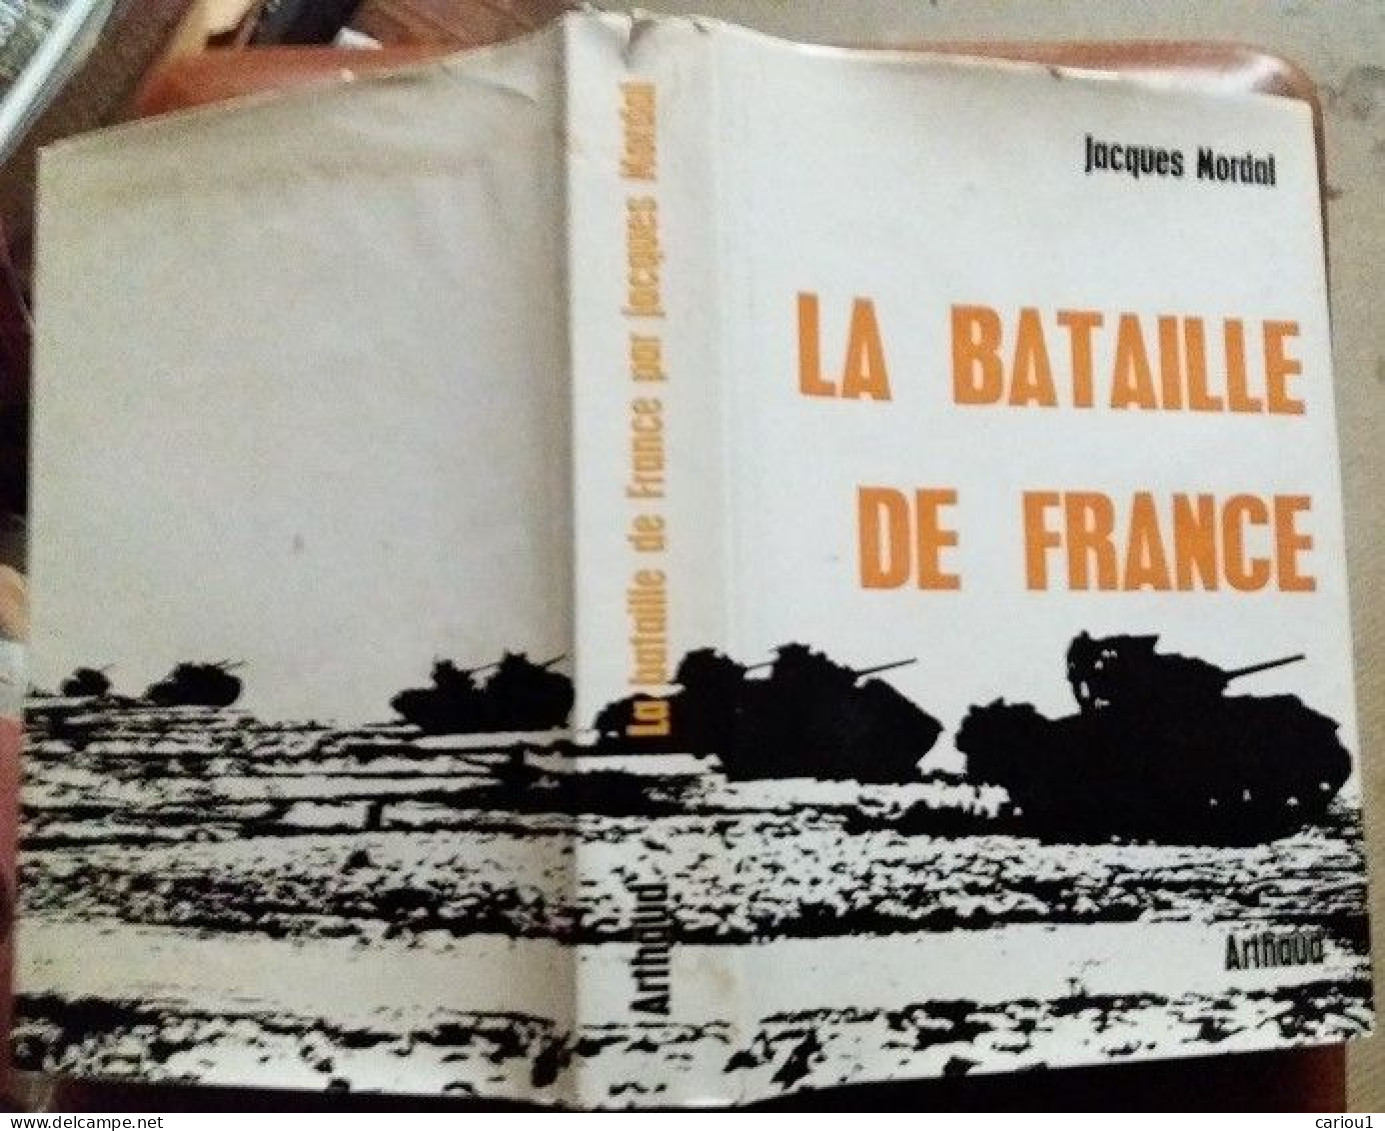 C1 Jacques MORDAL La BATAILLE DE FRANCE 1944 1945 Relie ILLUSTRE Epuise CARTES Port Inclus France - Frans